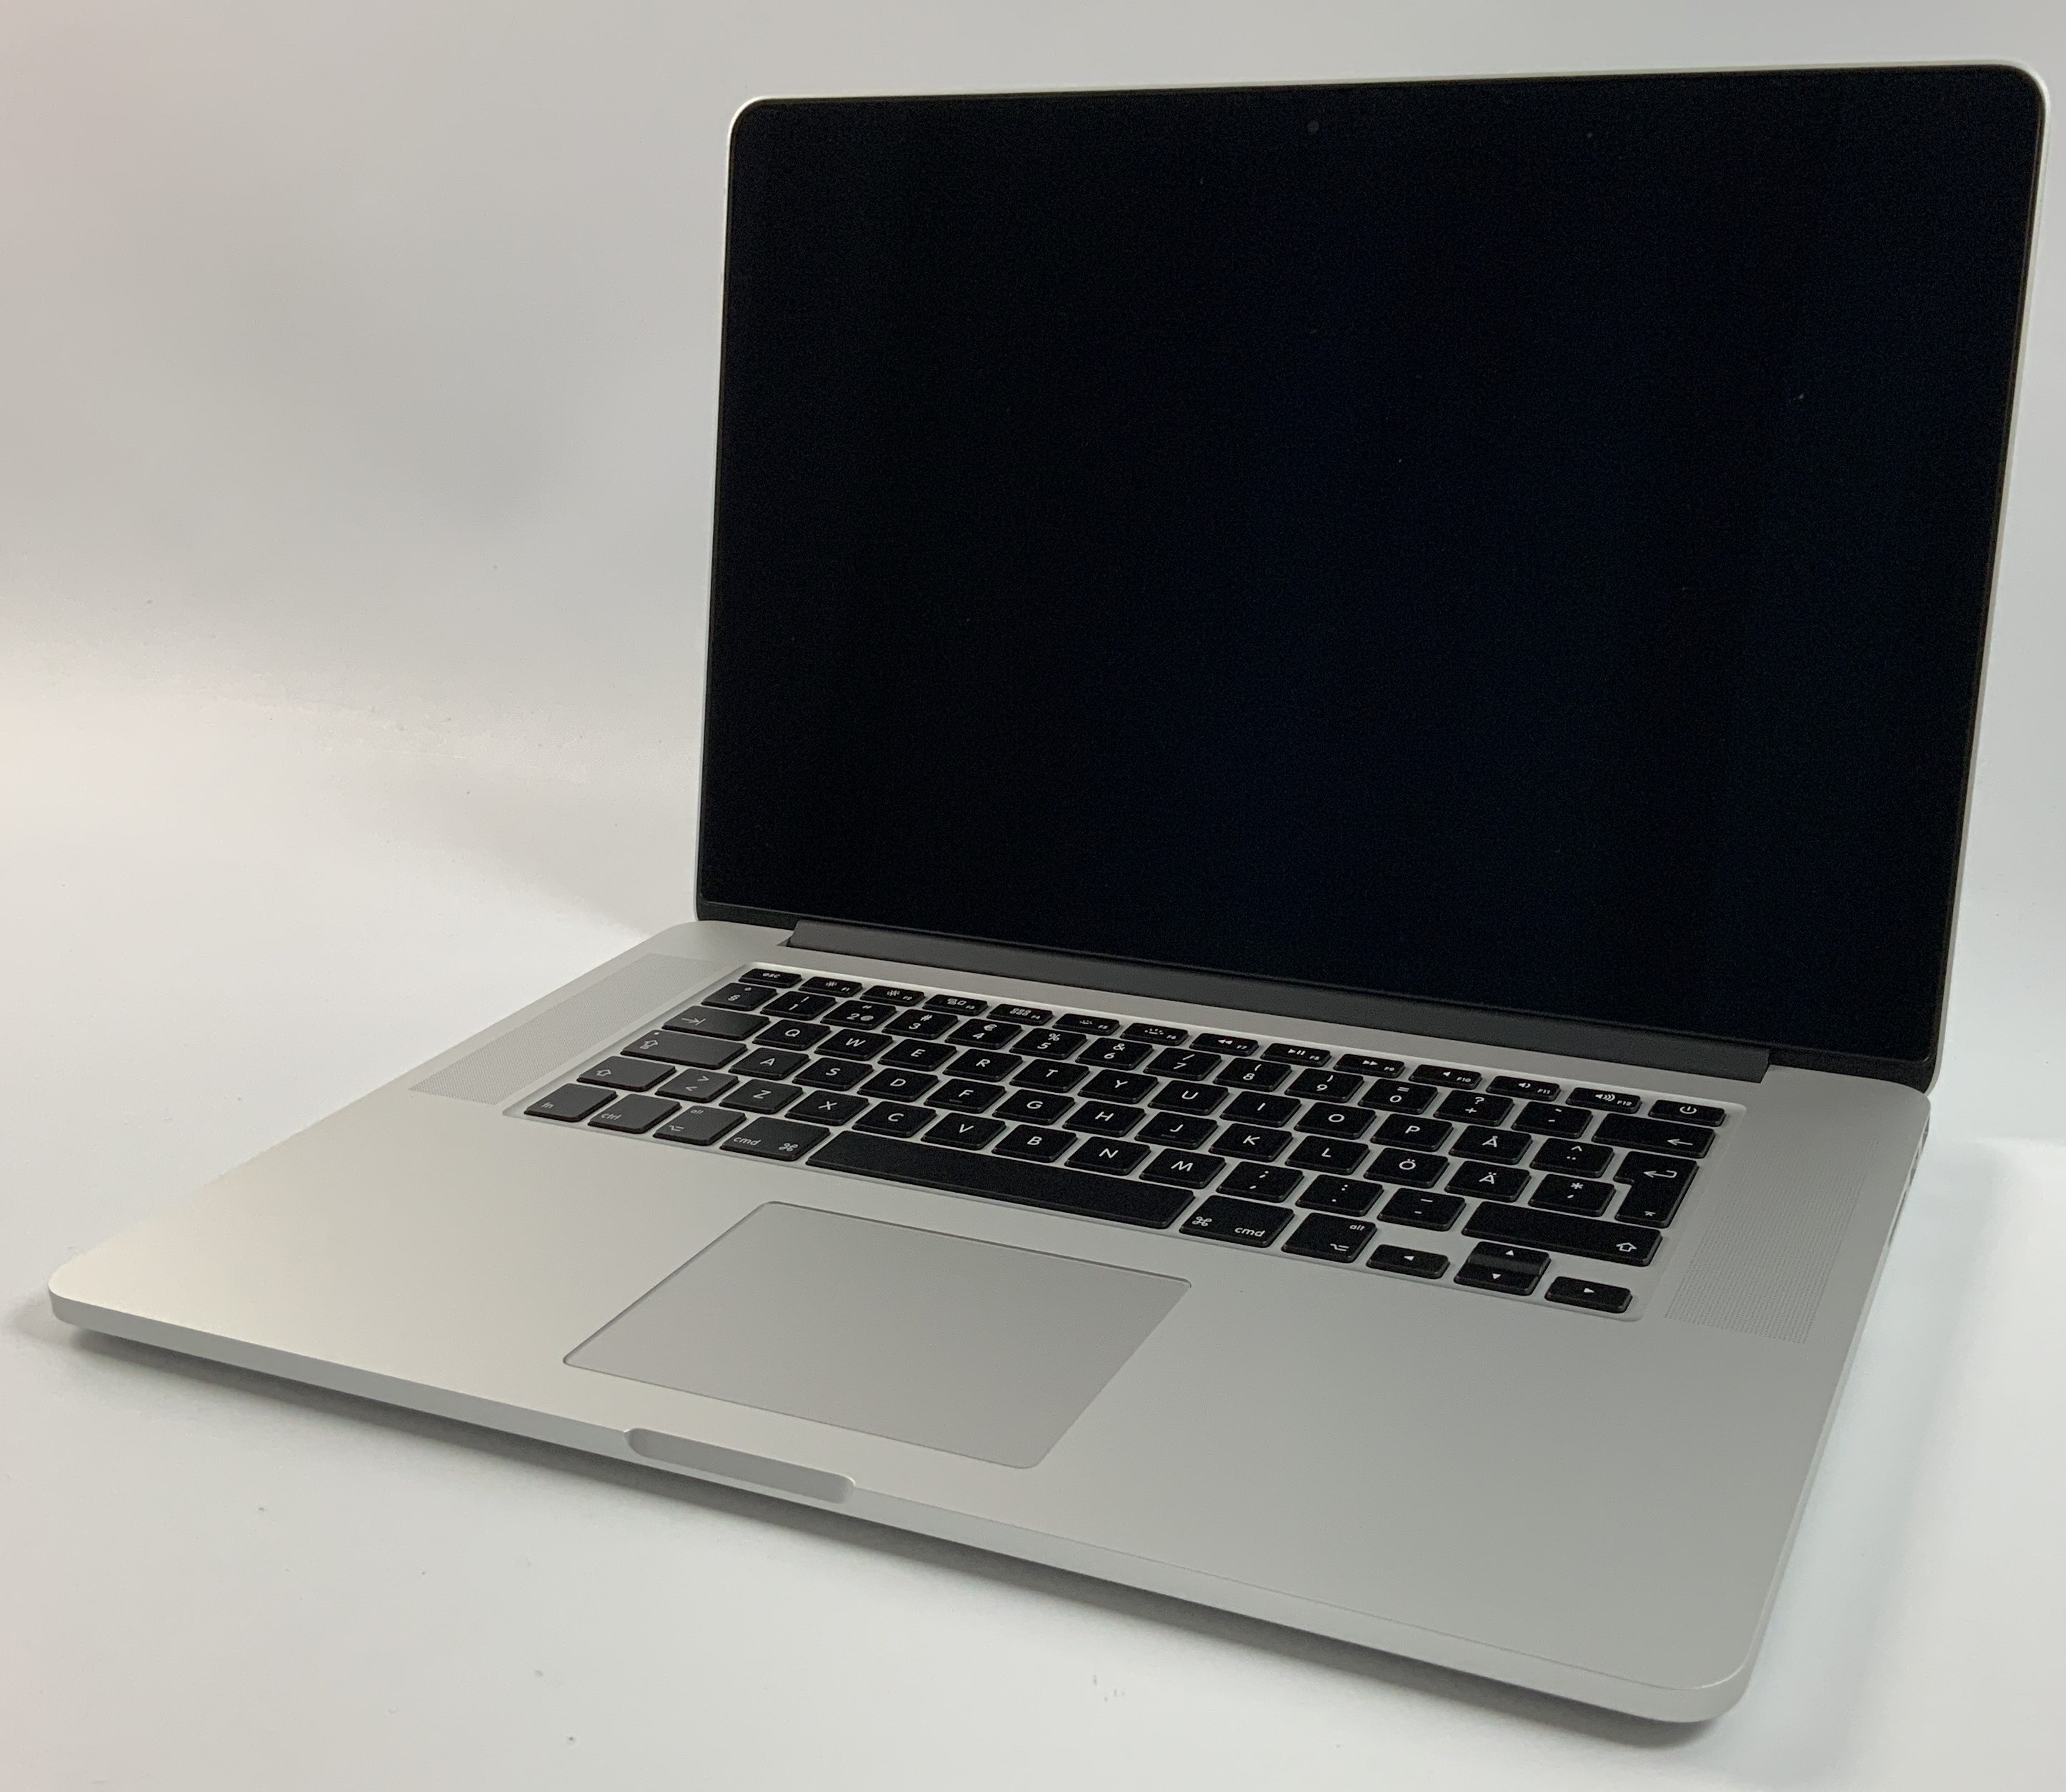 MacBook Pro Retina 15" Mid 2015 (Intel Quad-Core i7 2.2 GHz 16 GB RAM 256 GB SSD), Intel Quad-Core i7 2.2 GHz, 16 GB RAM, 256 GB SSD, bild 1